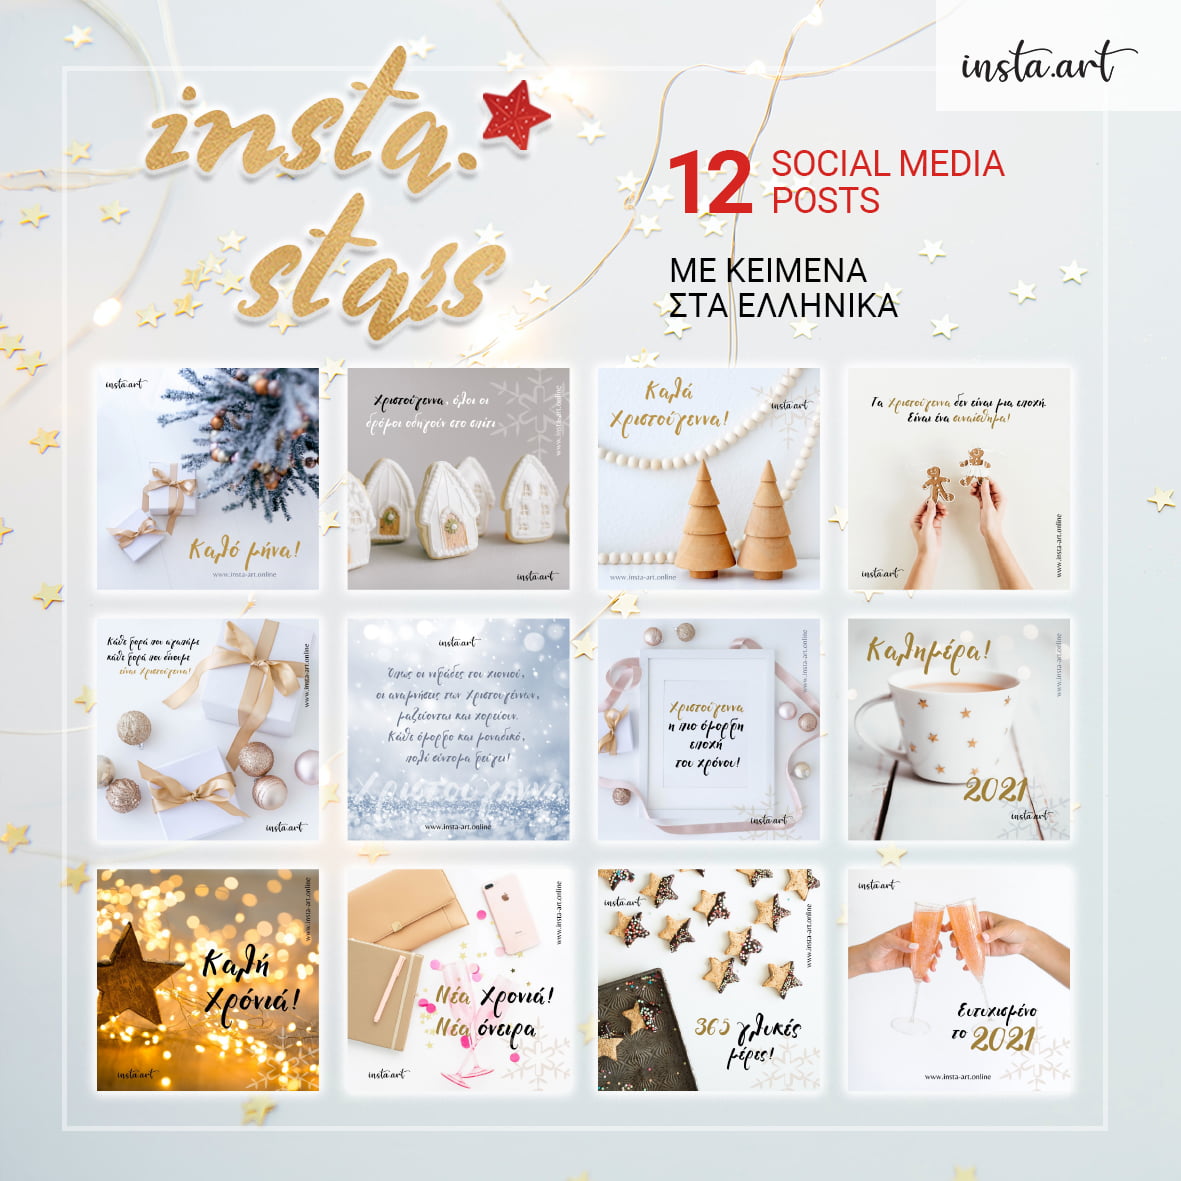 insta.stars-unbranded